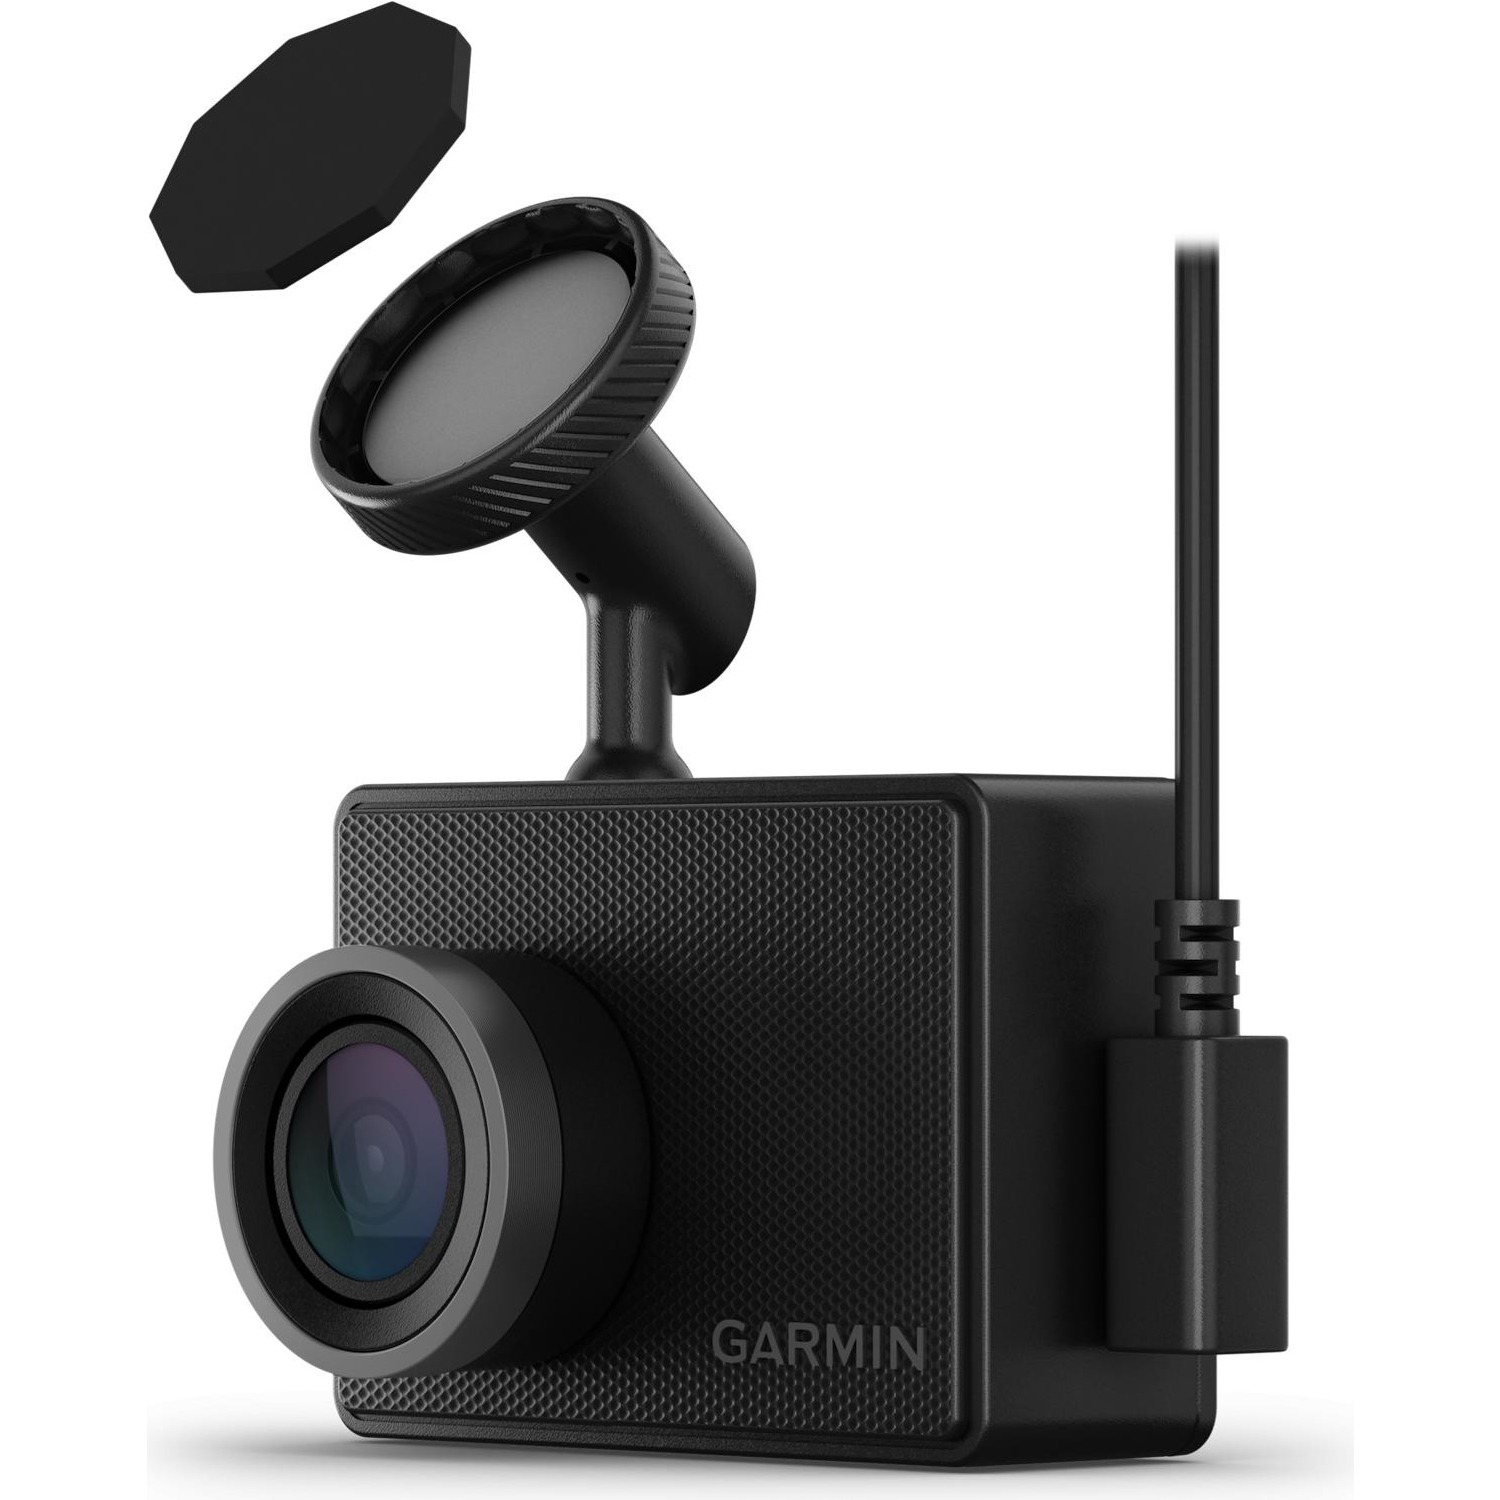 Immagine per Dash cam Garmin modello 47 da DIMOStore